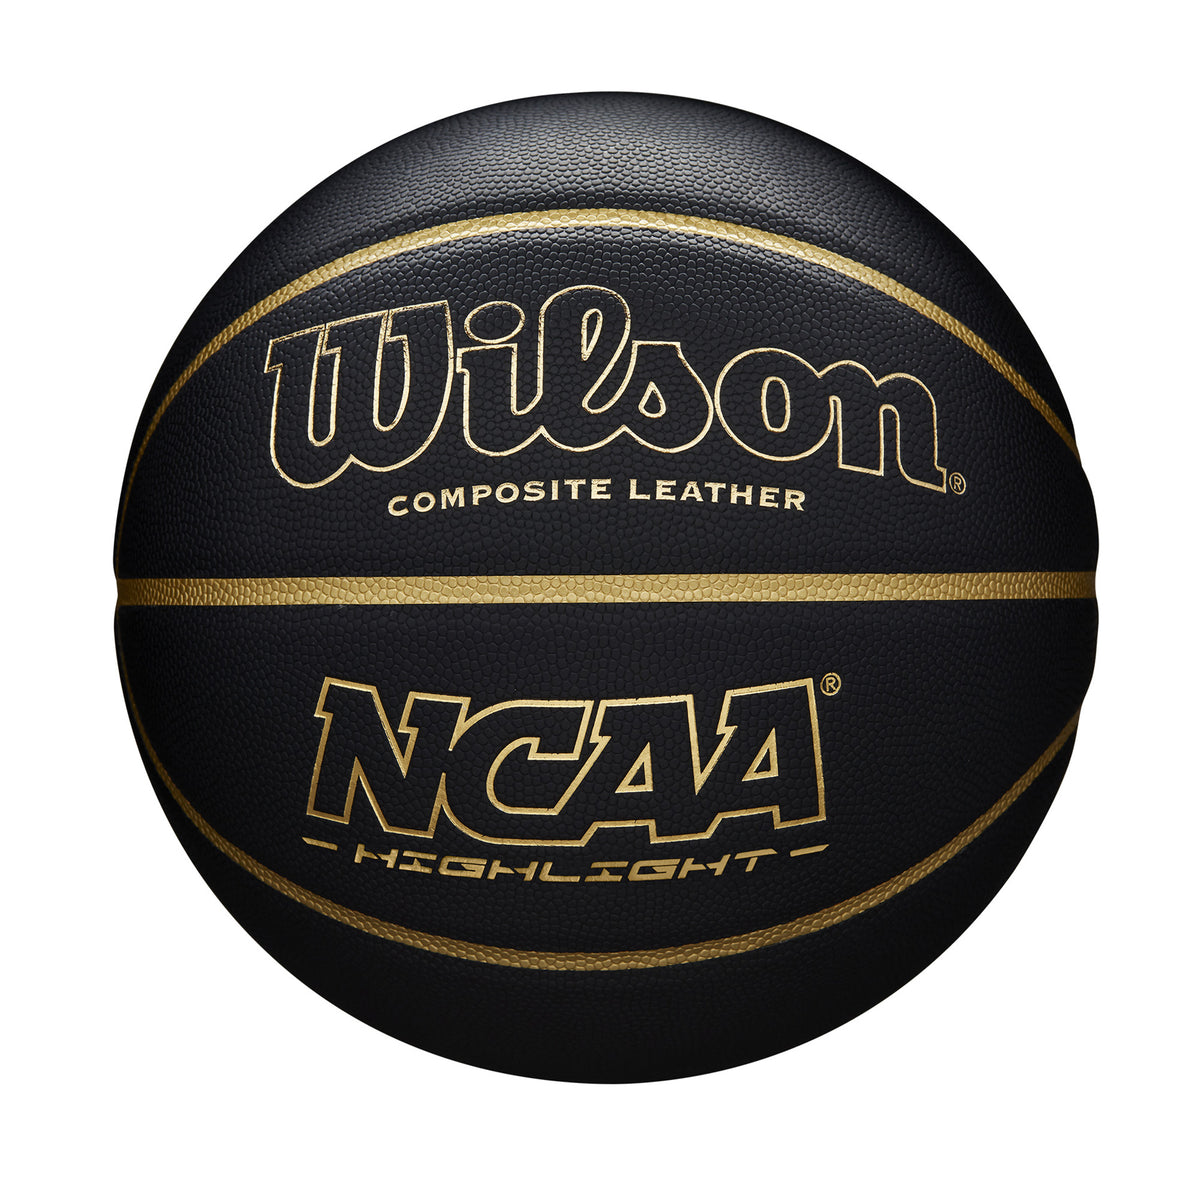 Balón Baloncesto Wilson Ncaa Highligth 295